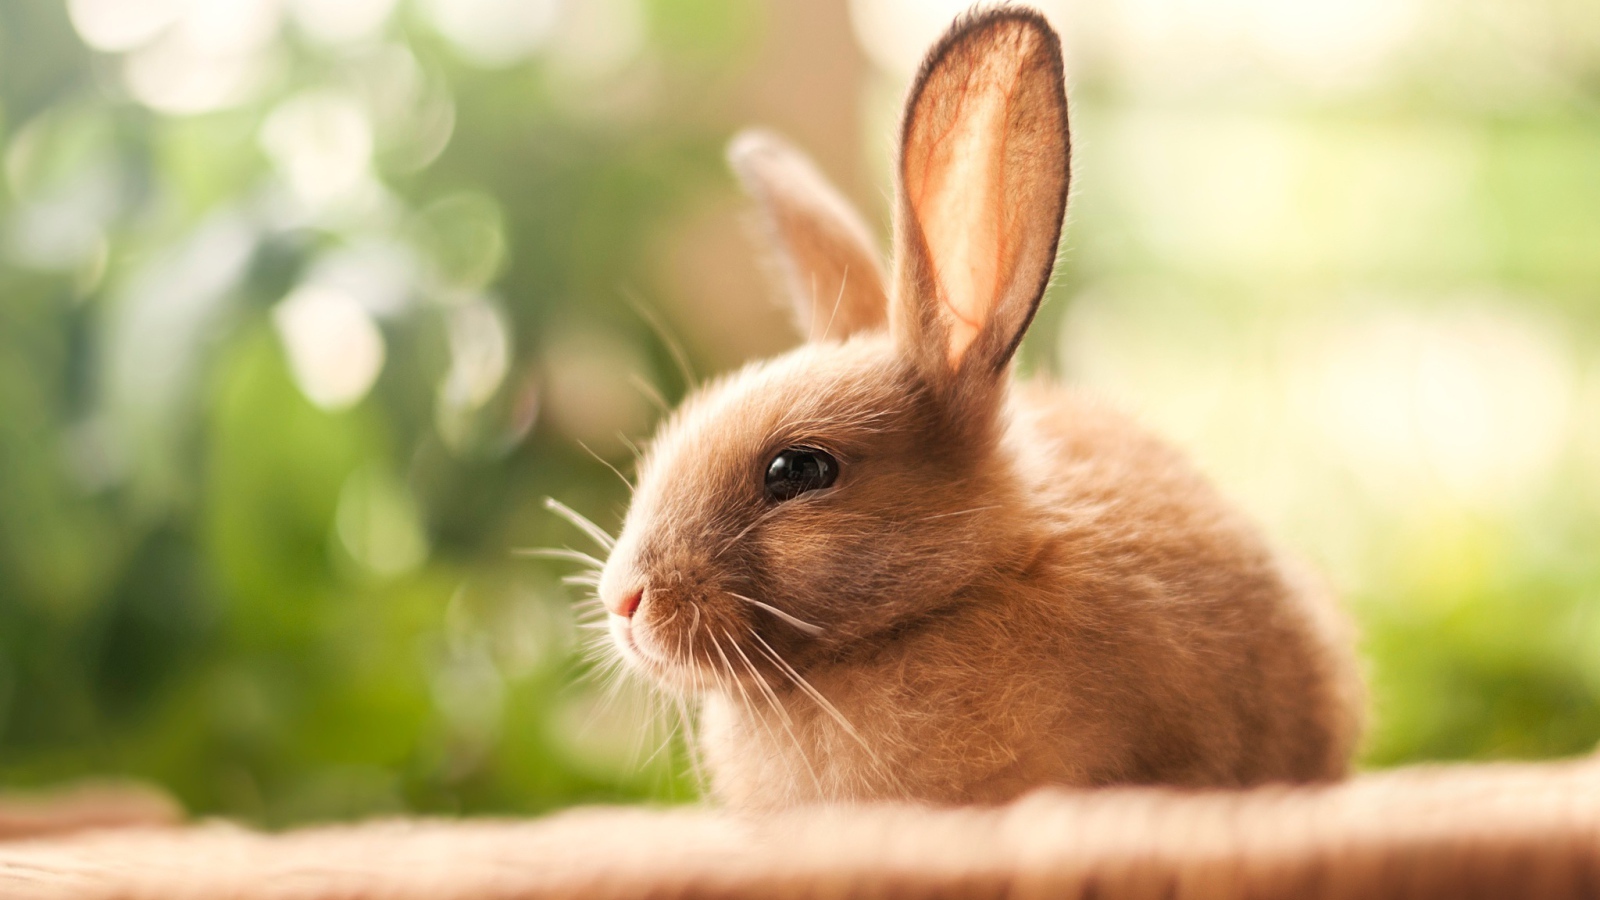 Милый декоративный кролик с длинными ушами 